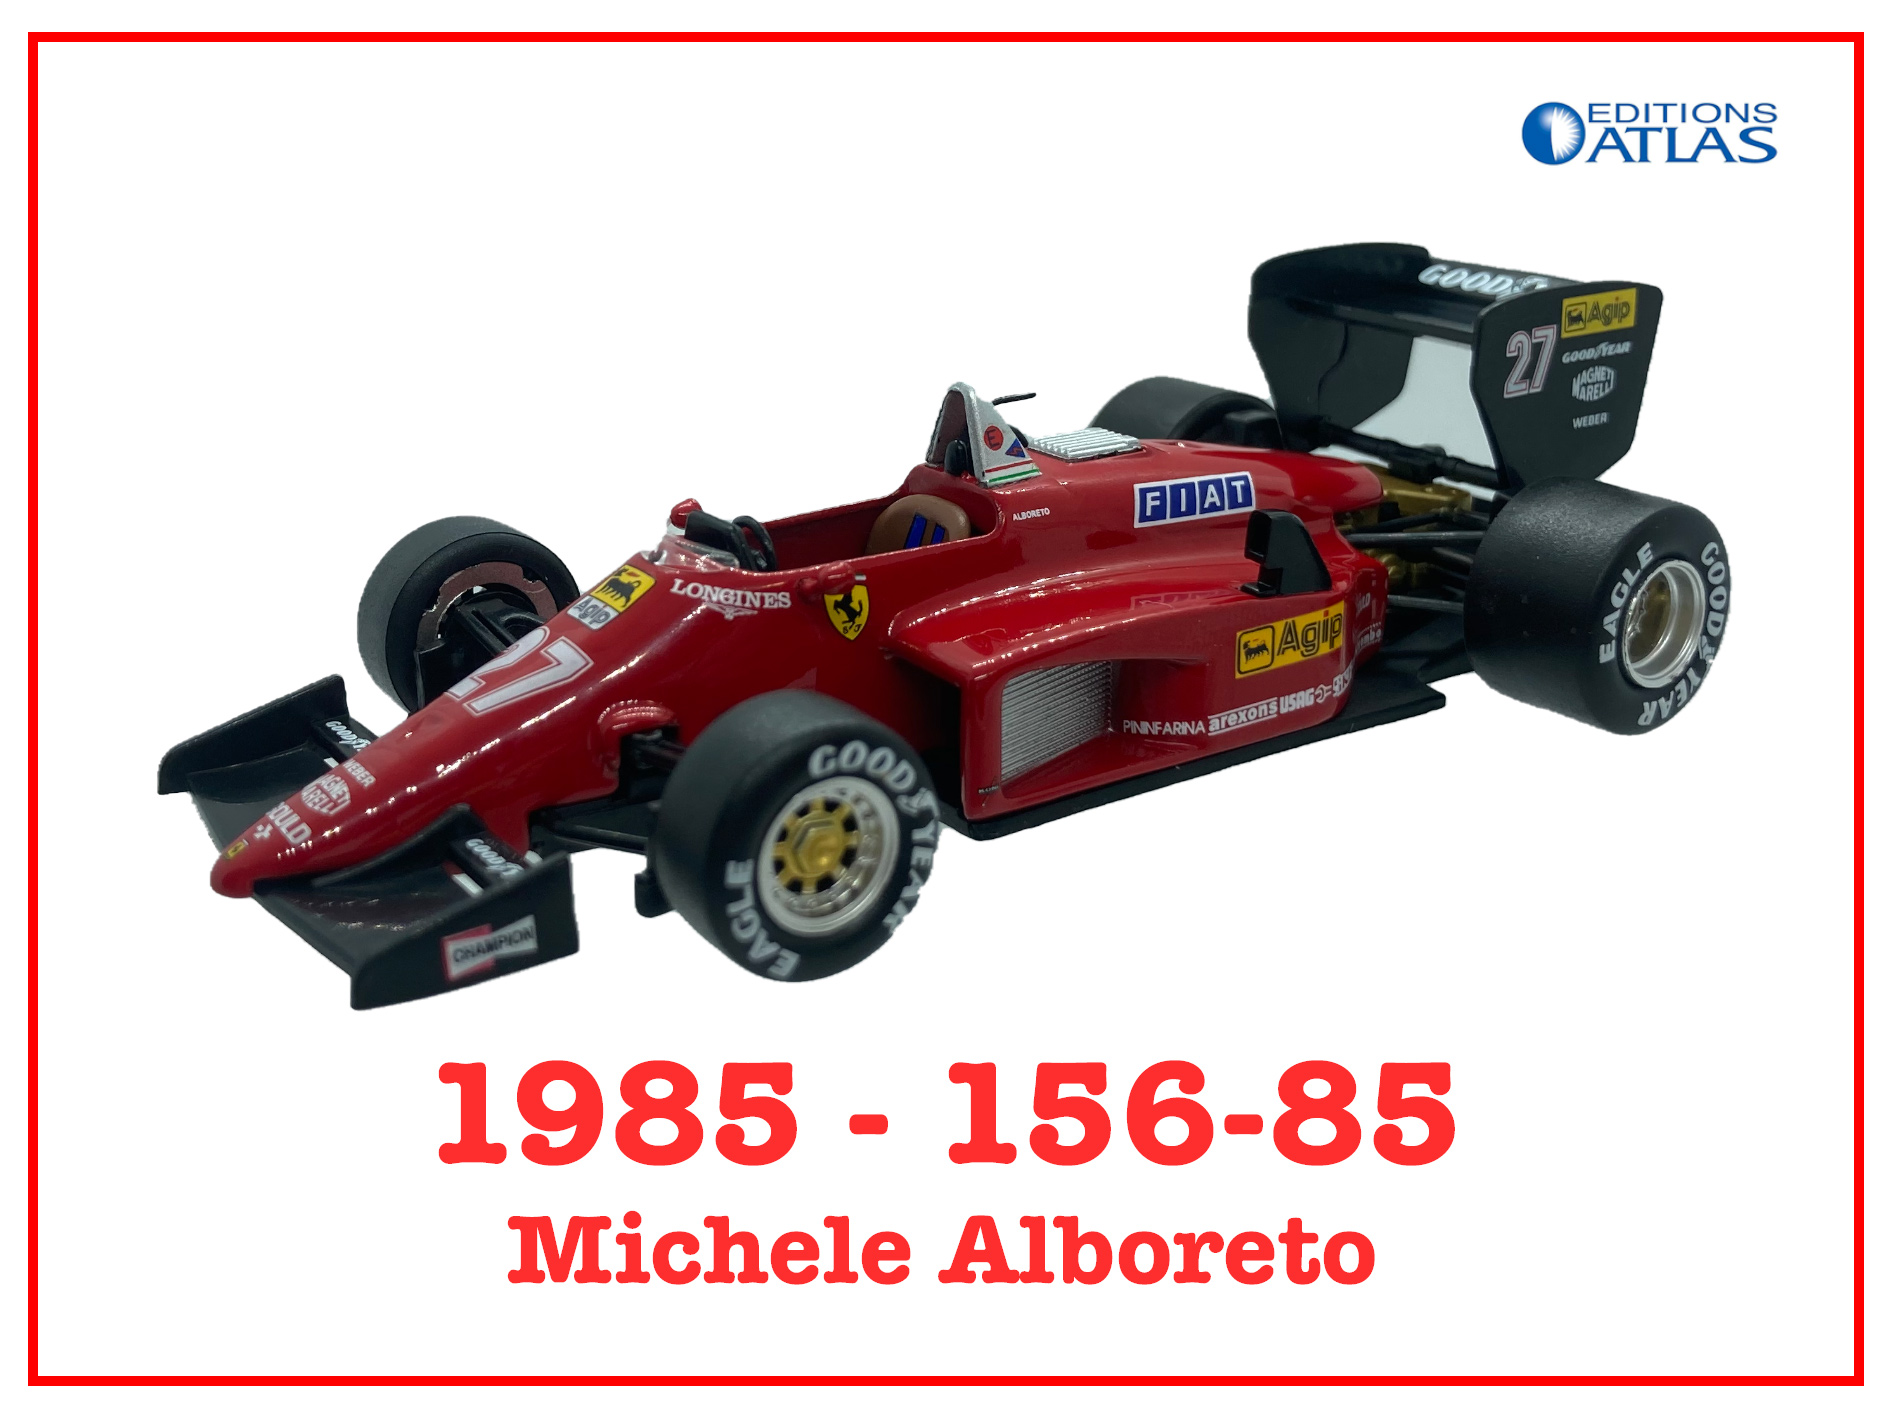 Immagine 156-85 - Michele Alboreto